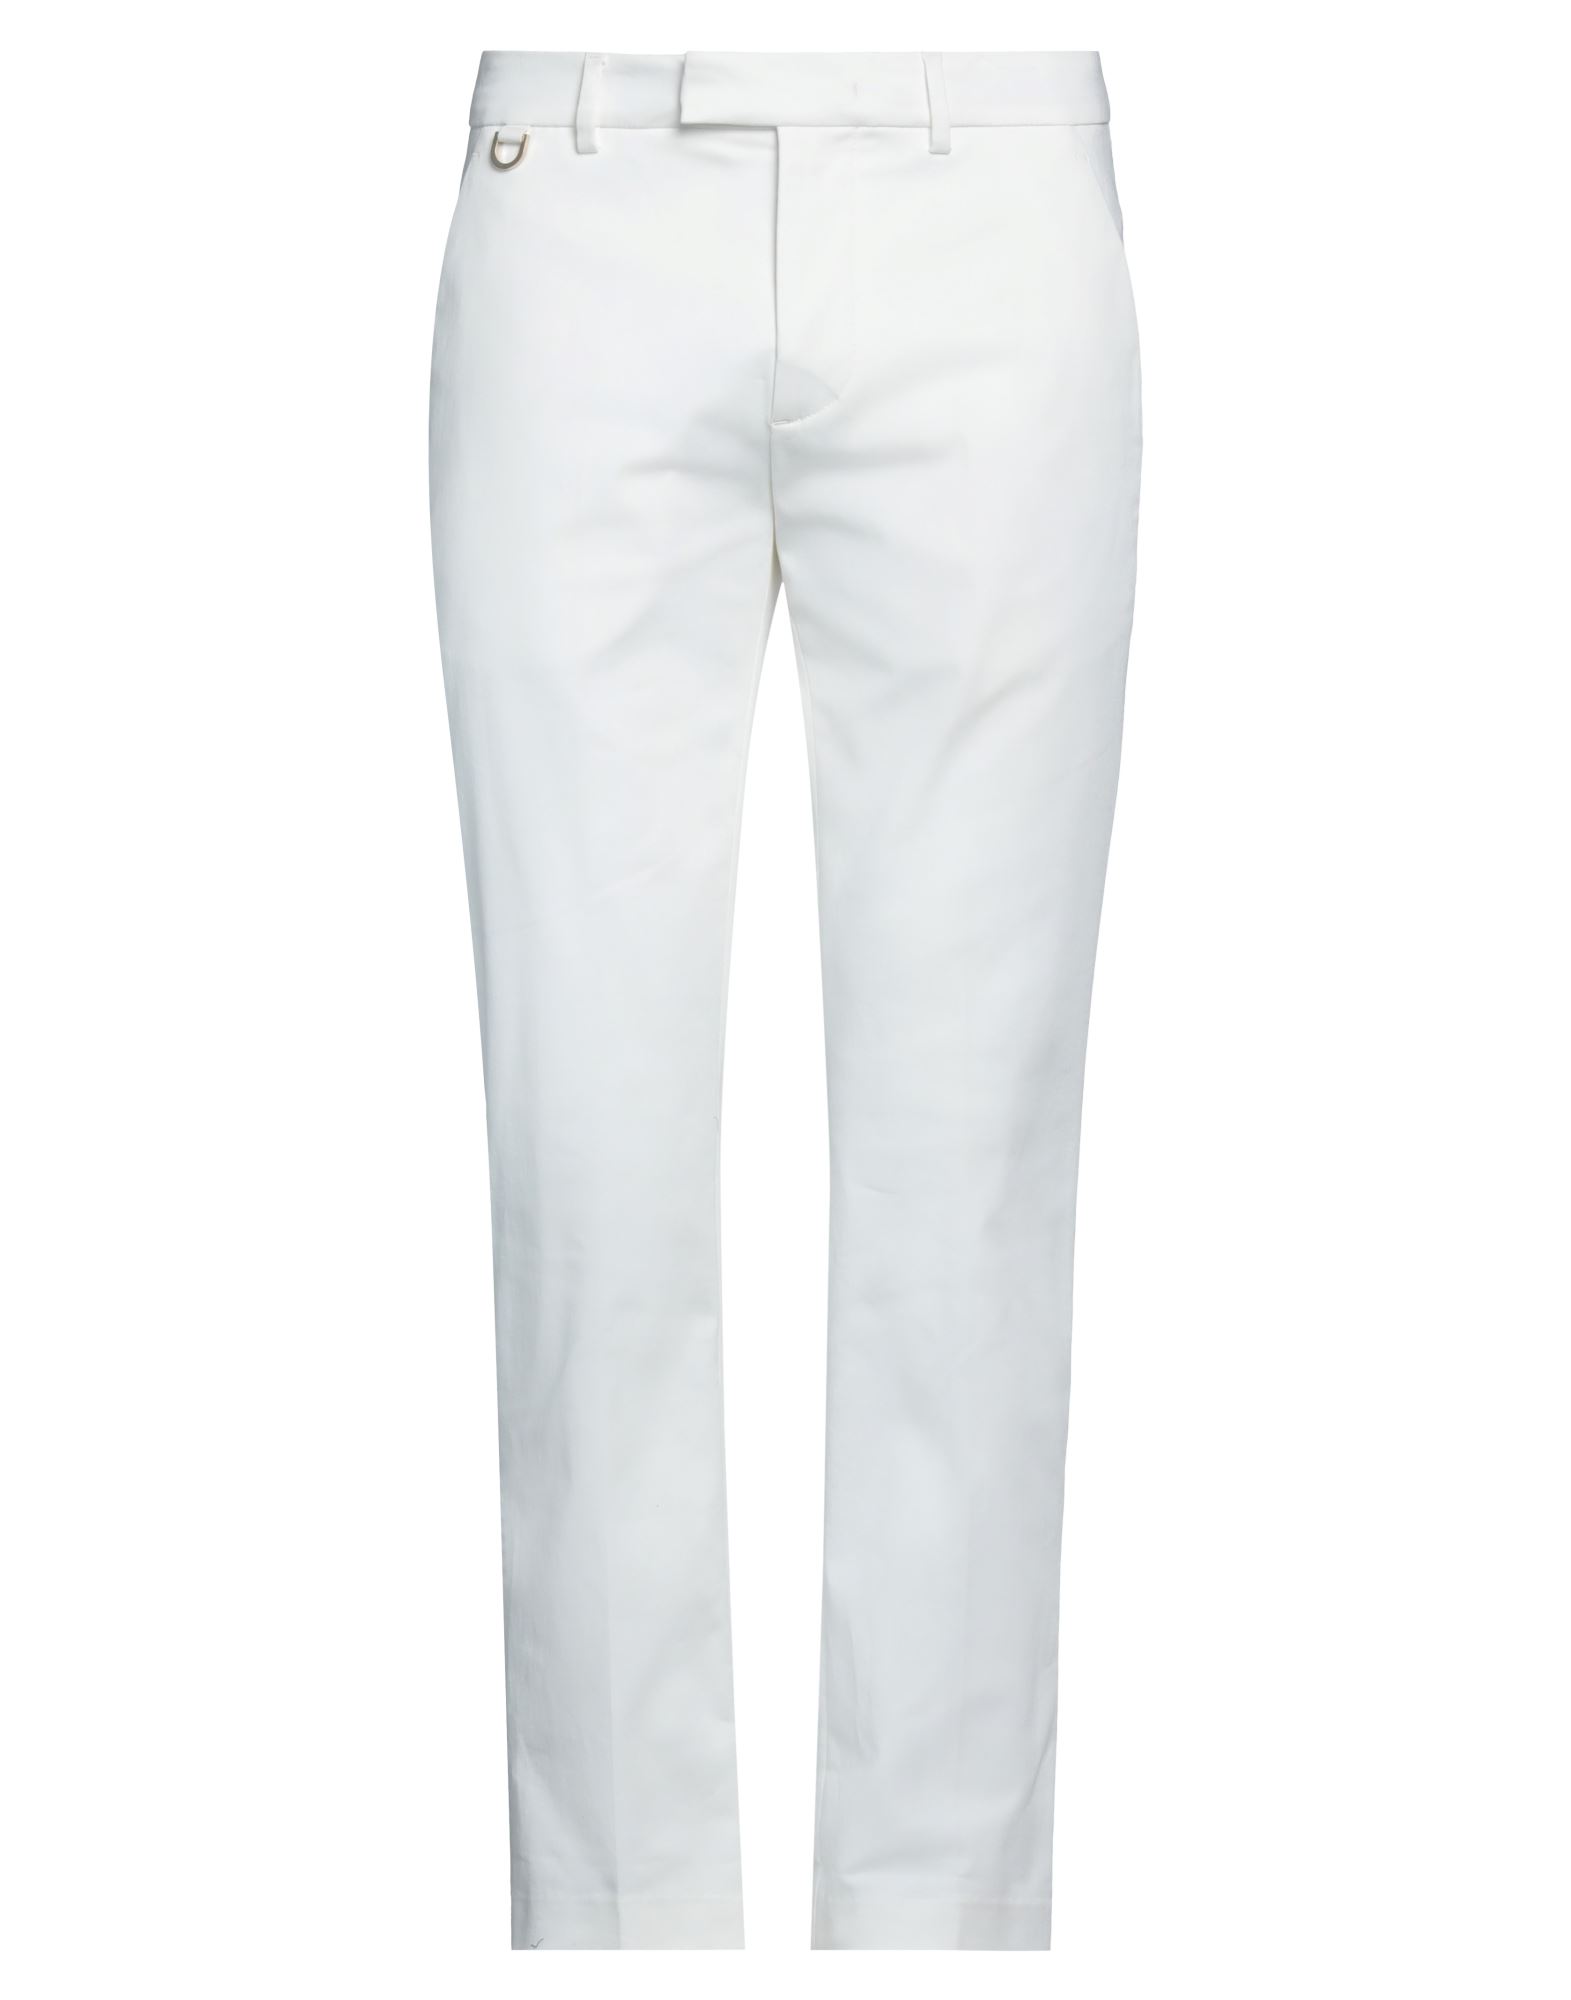 Shop The Seafarer Man Pants White Size 36 Cotton, Elastane